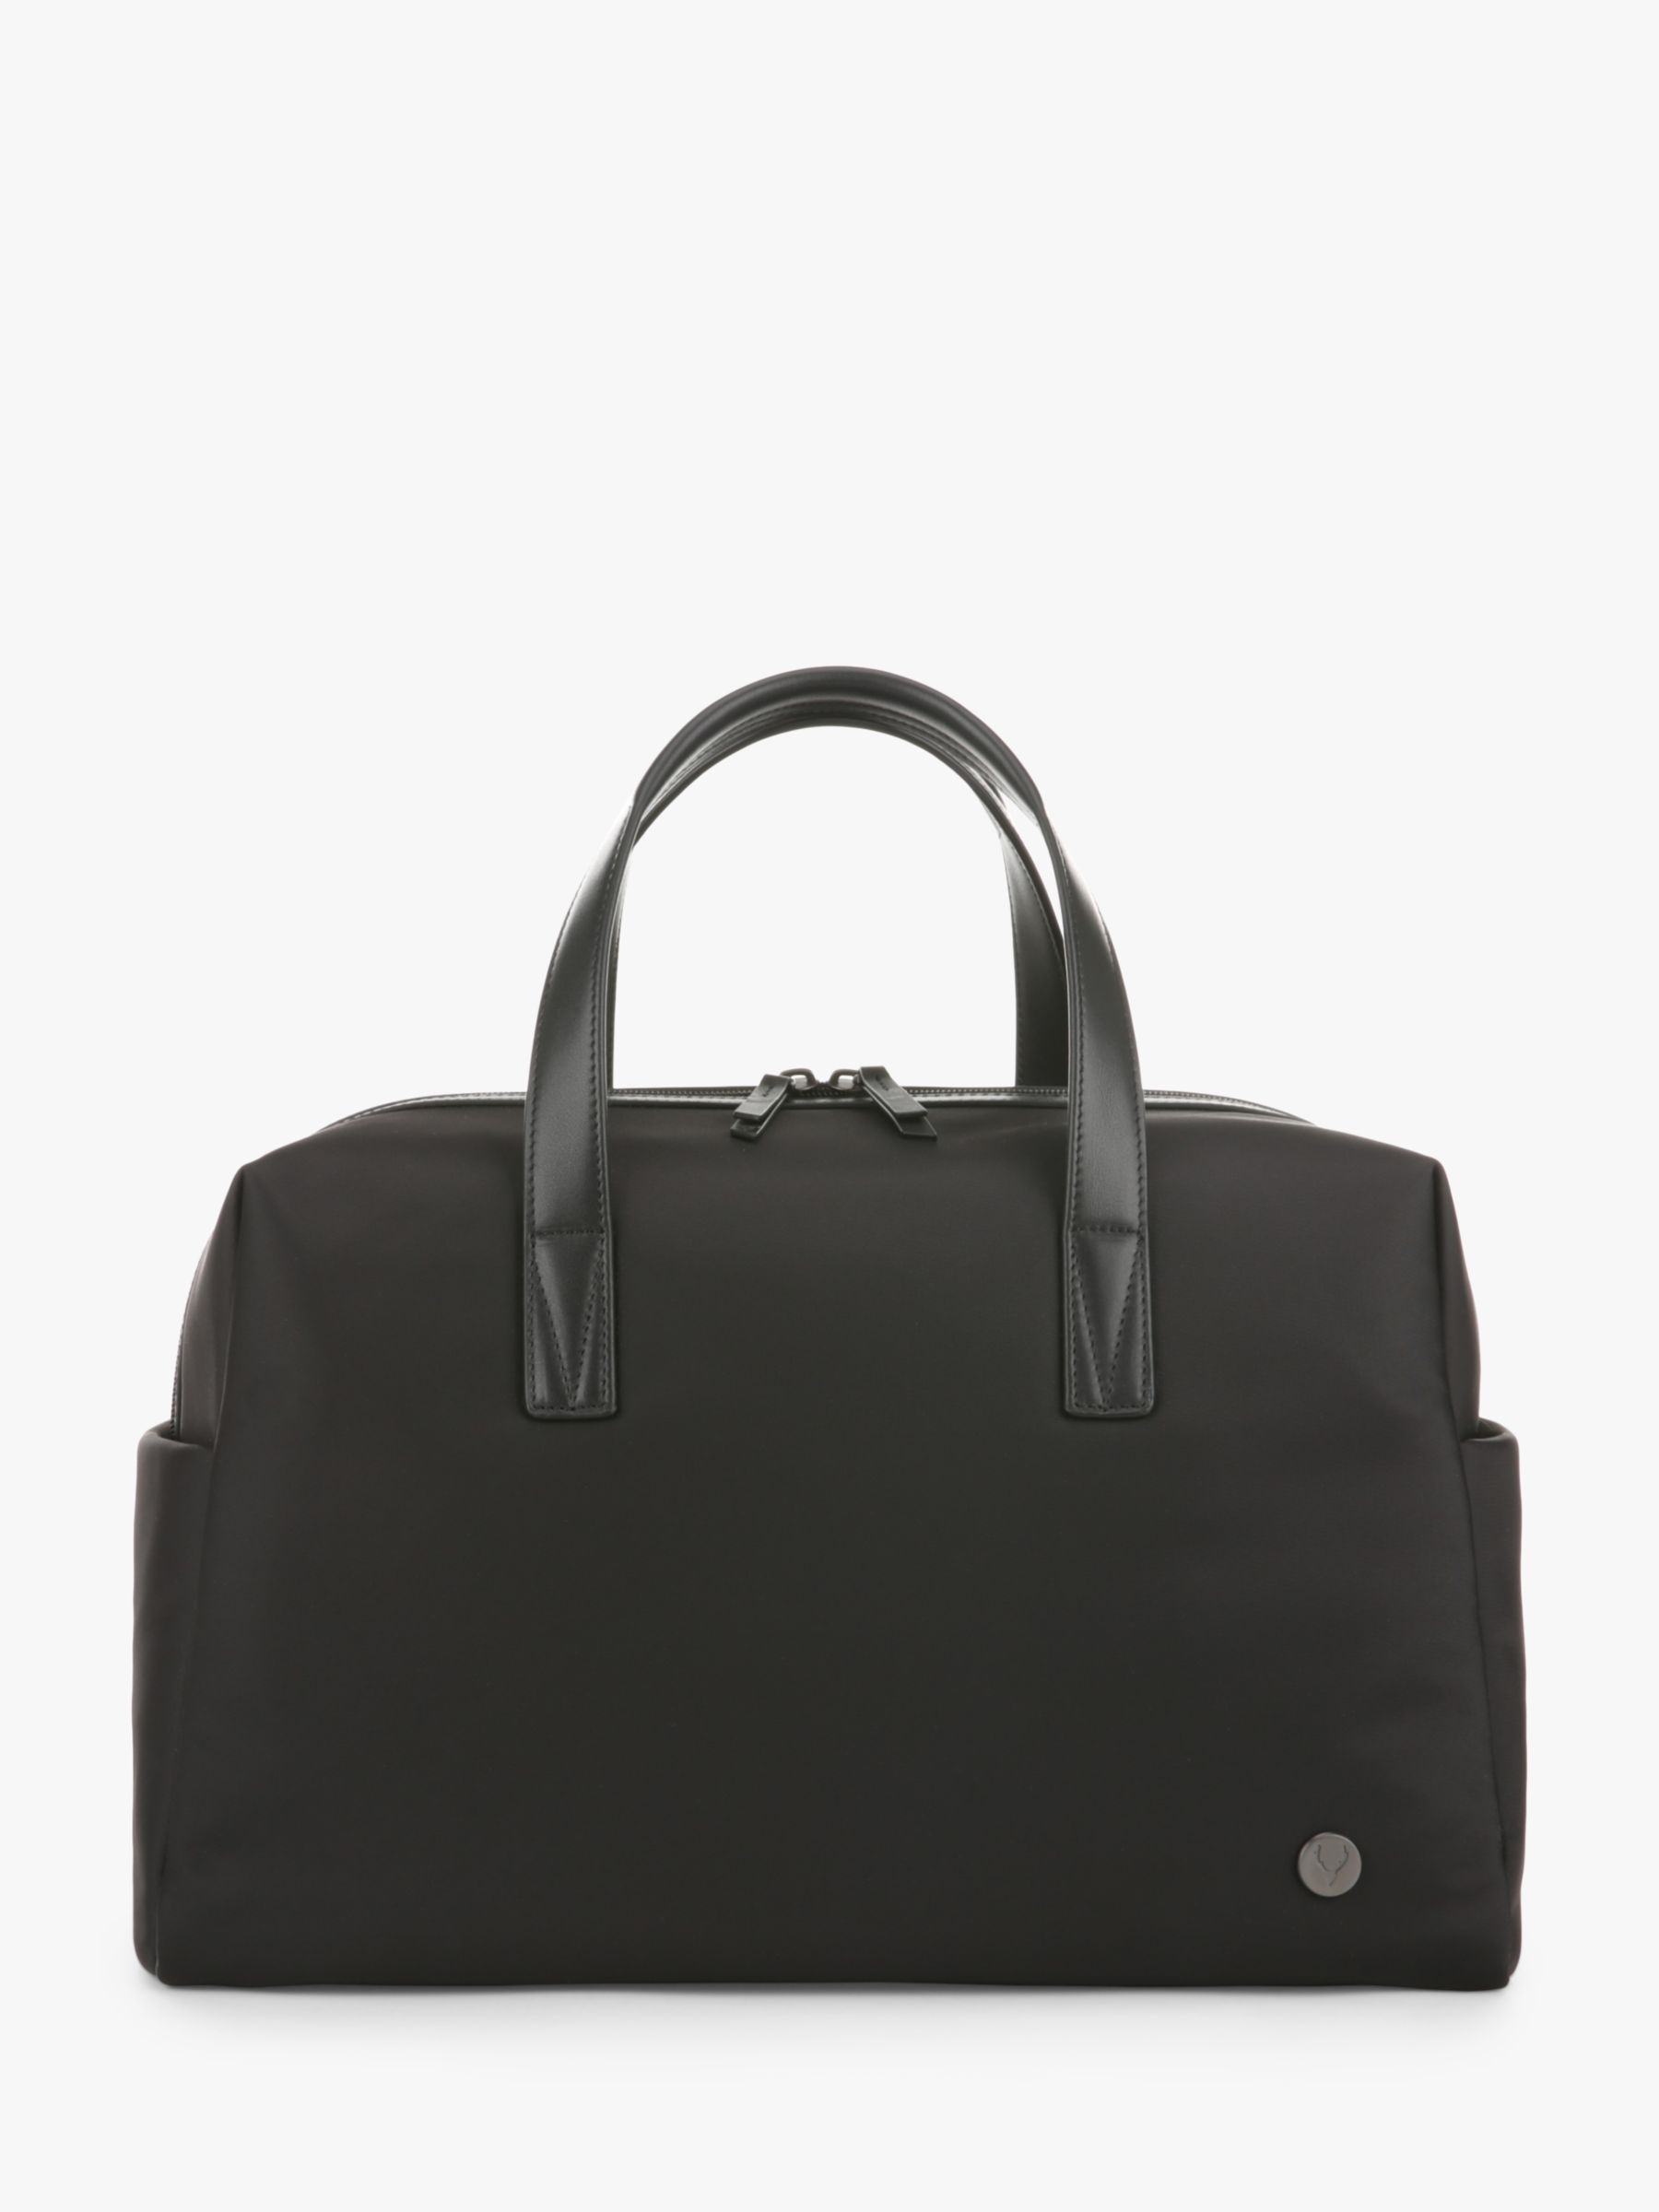 Ночная сумка Челси Antler, черный adly легкий жесткий спиннер 20 дюймов синий ручная сумка